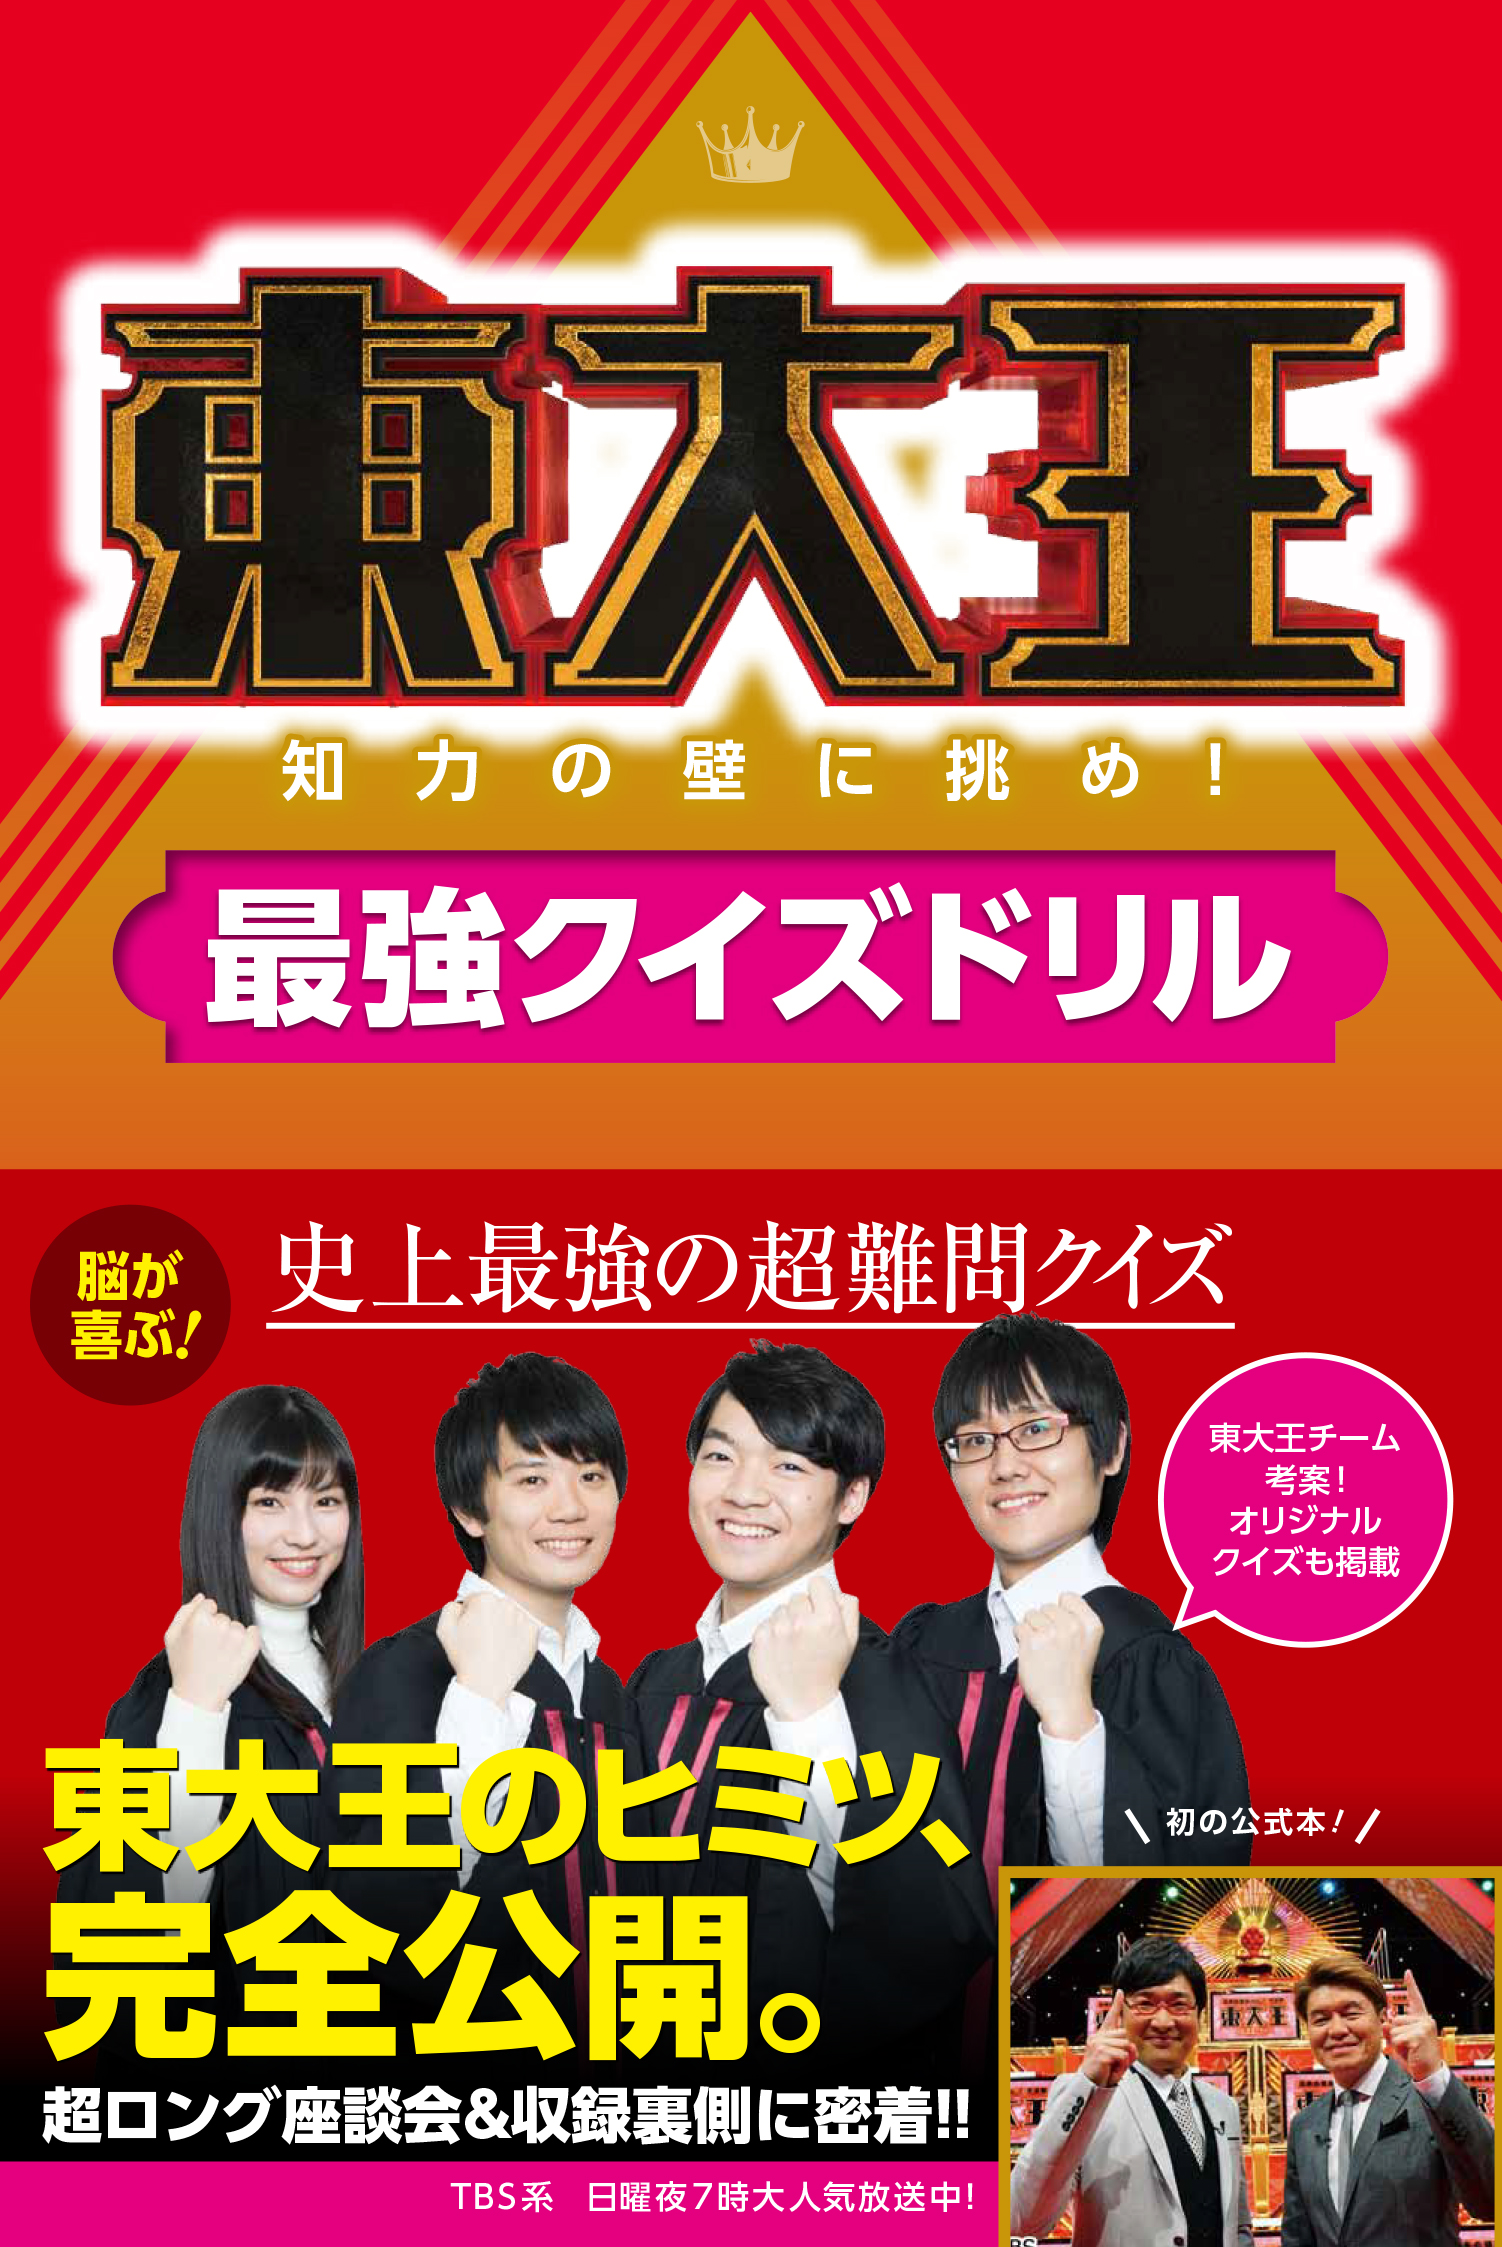 発売わずか１日で重版決定 最強クイズ番組 東大王 初の公式本がアツい 株式会社kadokawaのプレスリリース